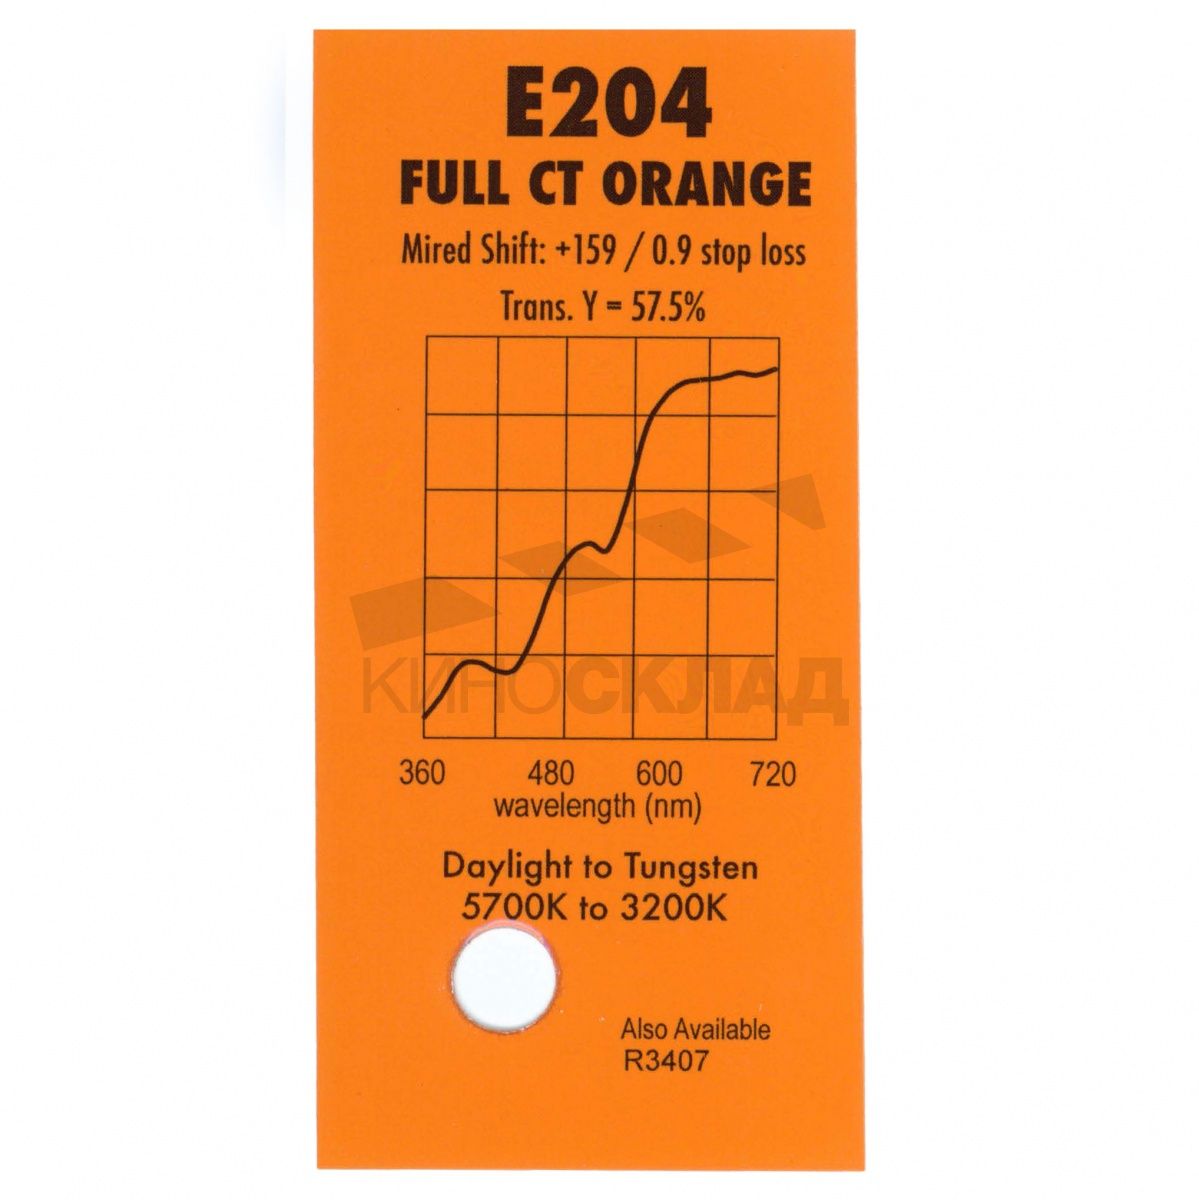 Детальная картинка товара LEE Filters # 204 Full Ct Orange в магазине Музыкальная Тема